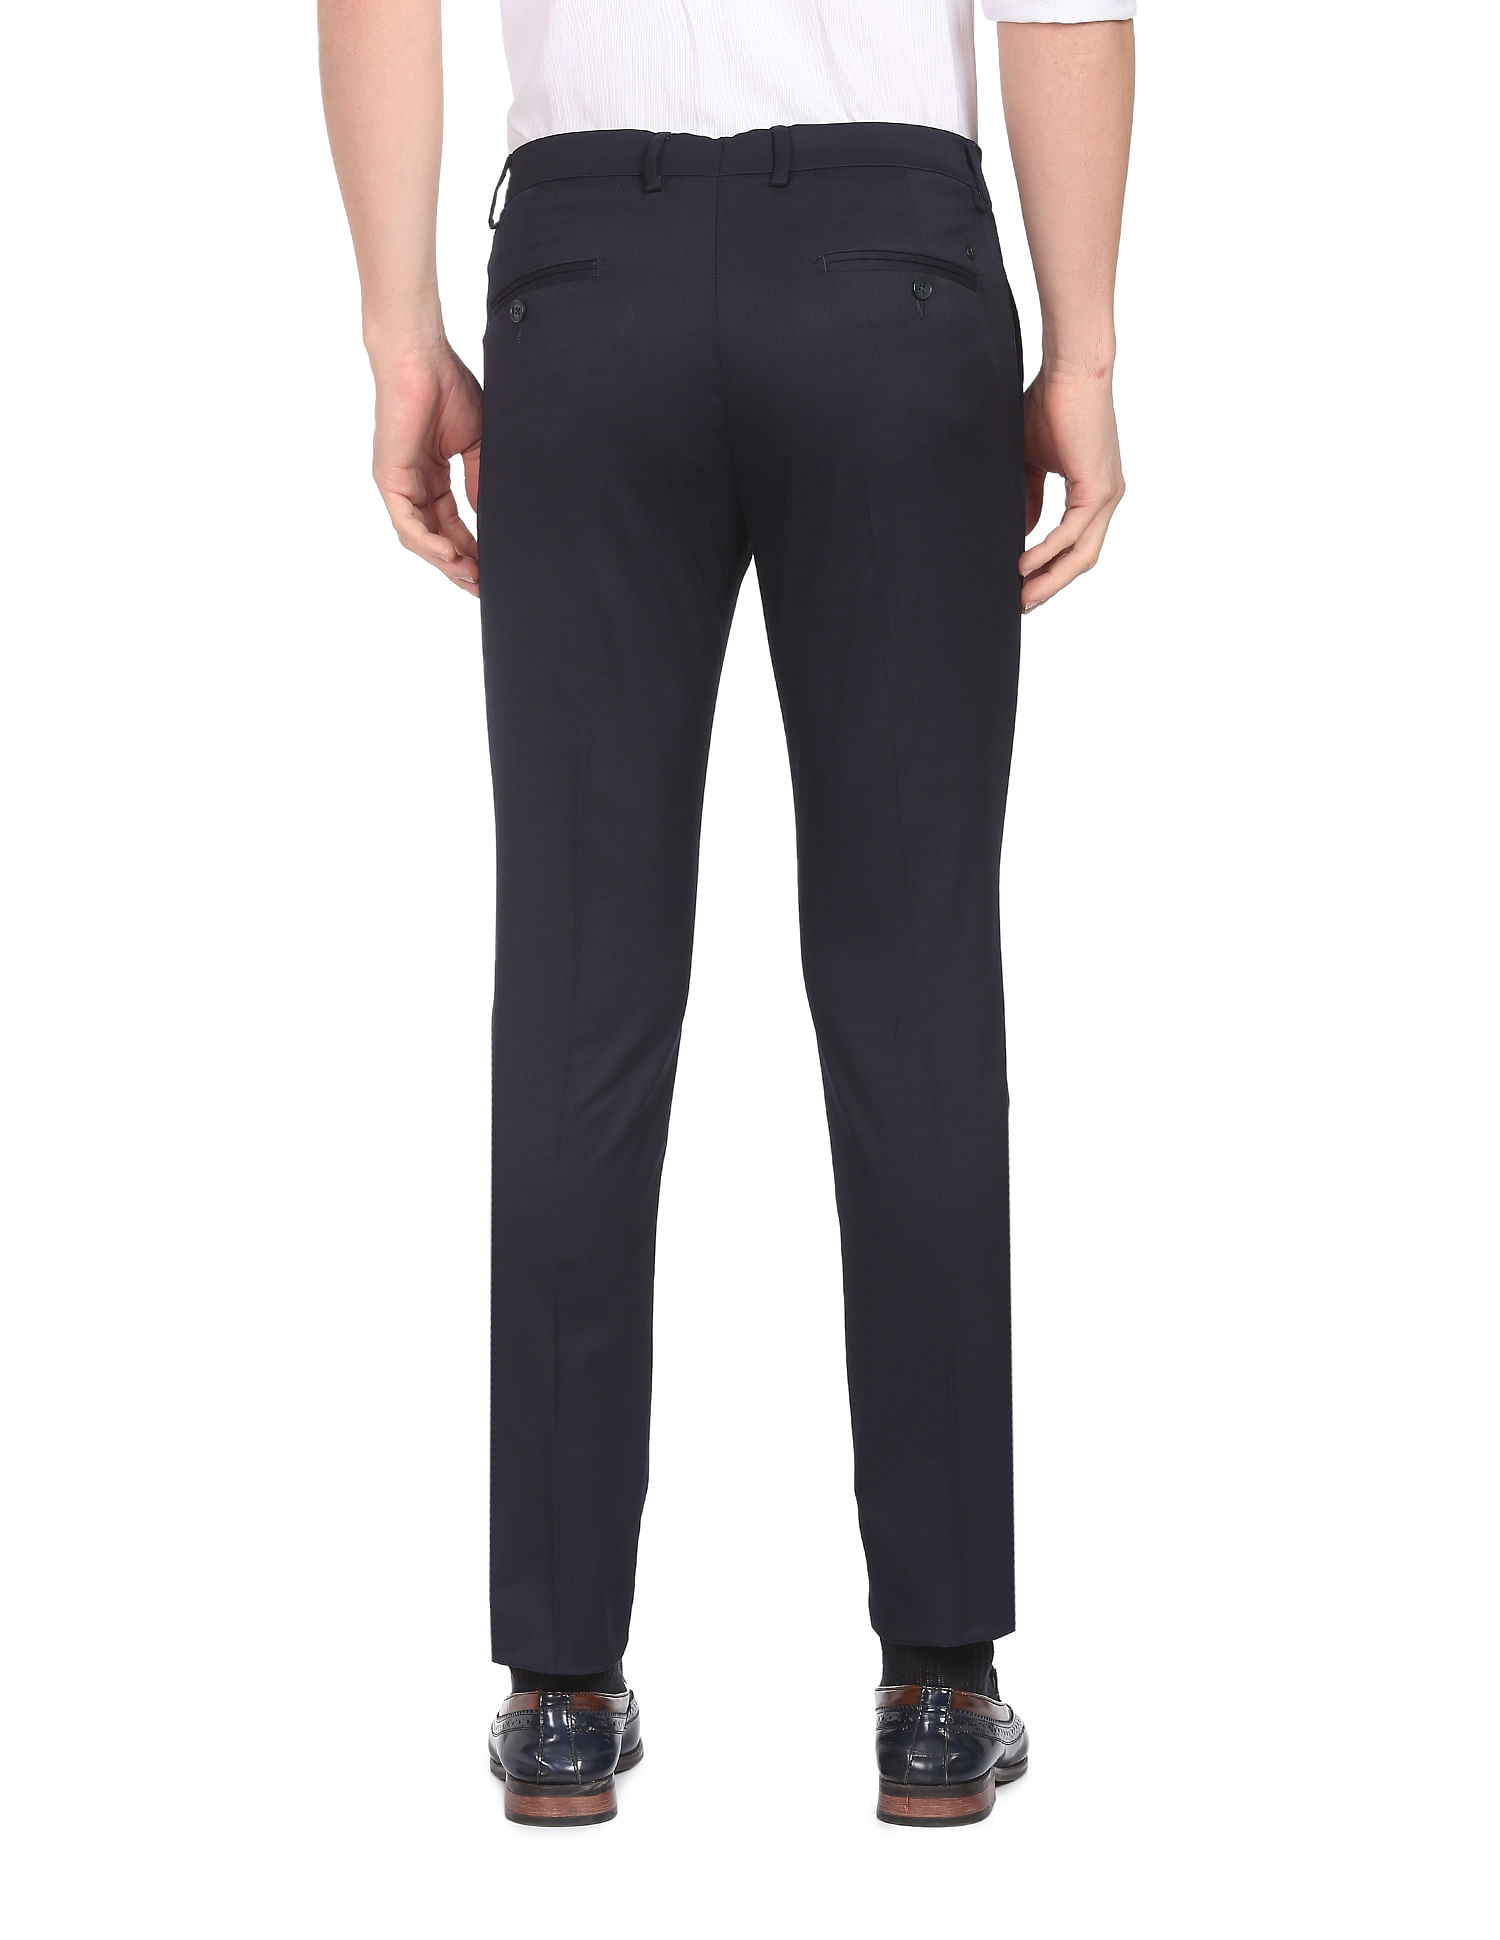 Black Slim Fit Tuxedo Pants - Jim's Formal Wear – Jim's Formal Wear Shop